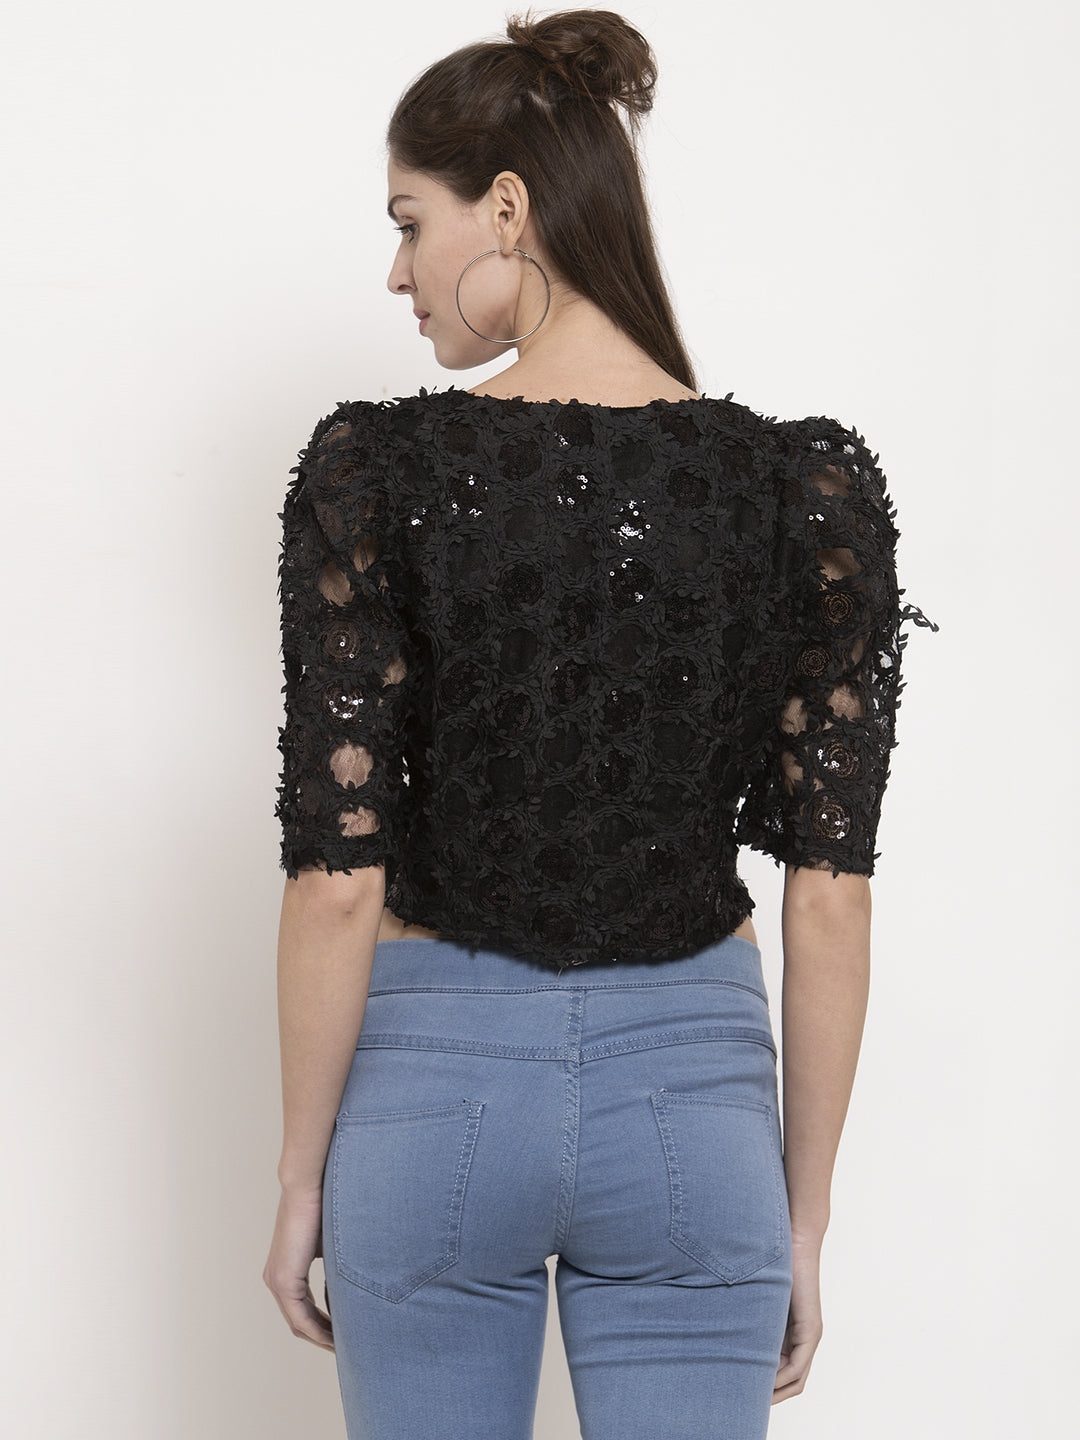 Ladies black lace net top